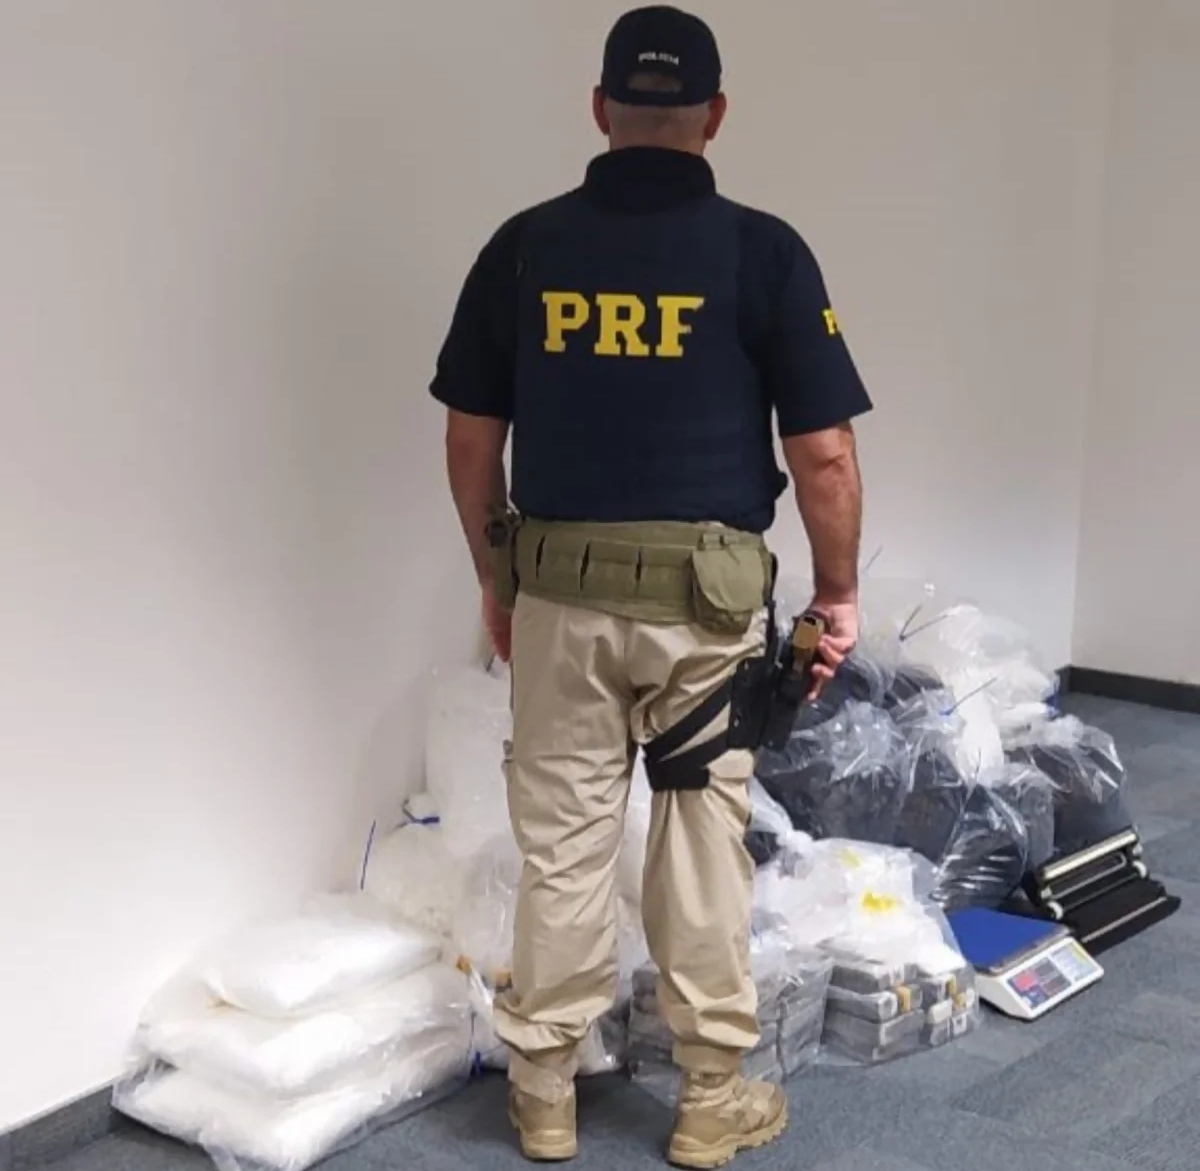 Ação da PRF, PF e PMSC apreende carga de cocaína em Balneário Camboriú (SC)